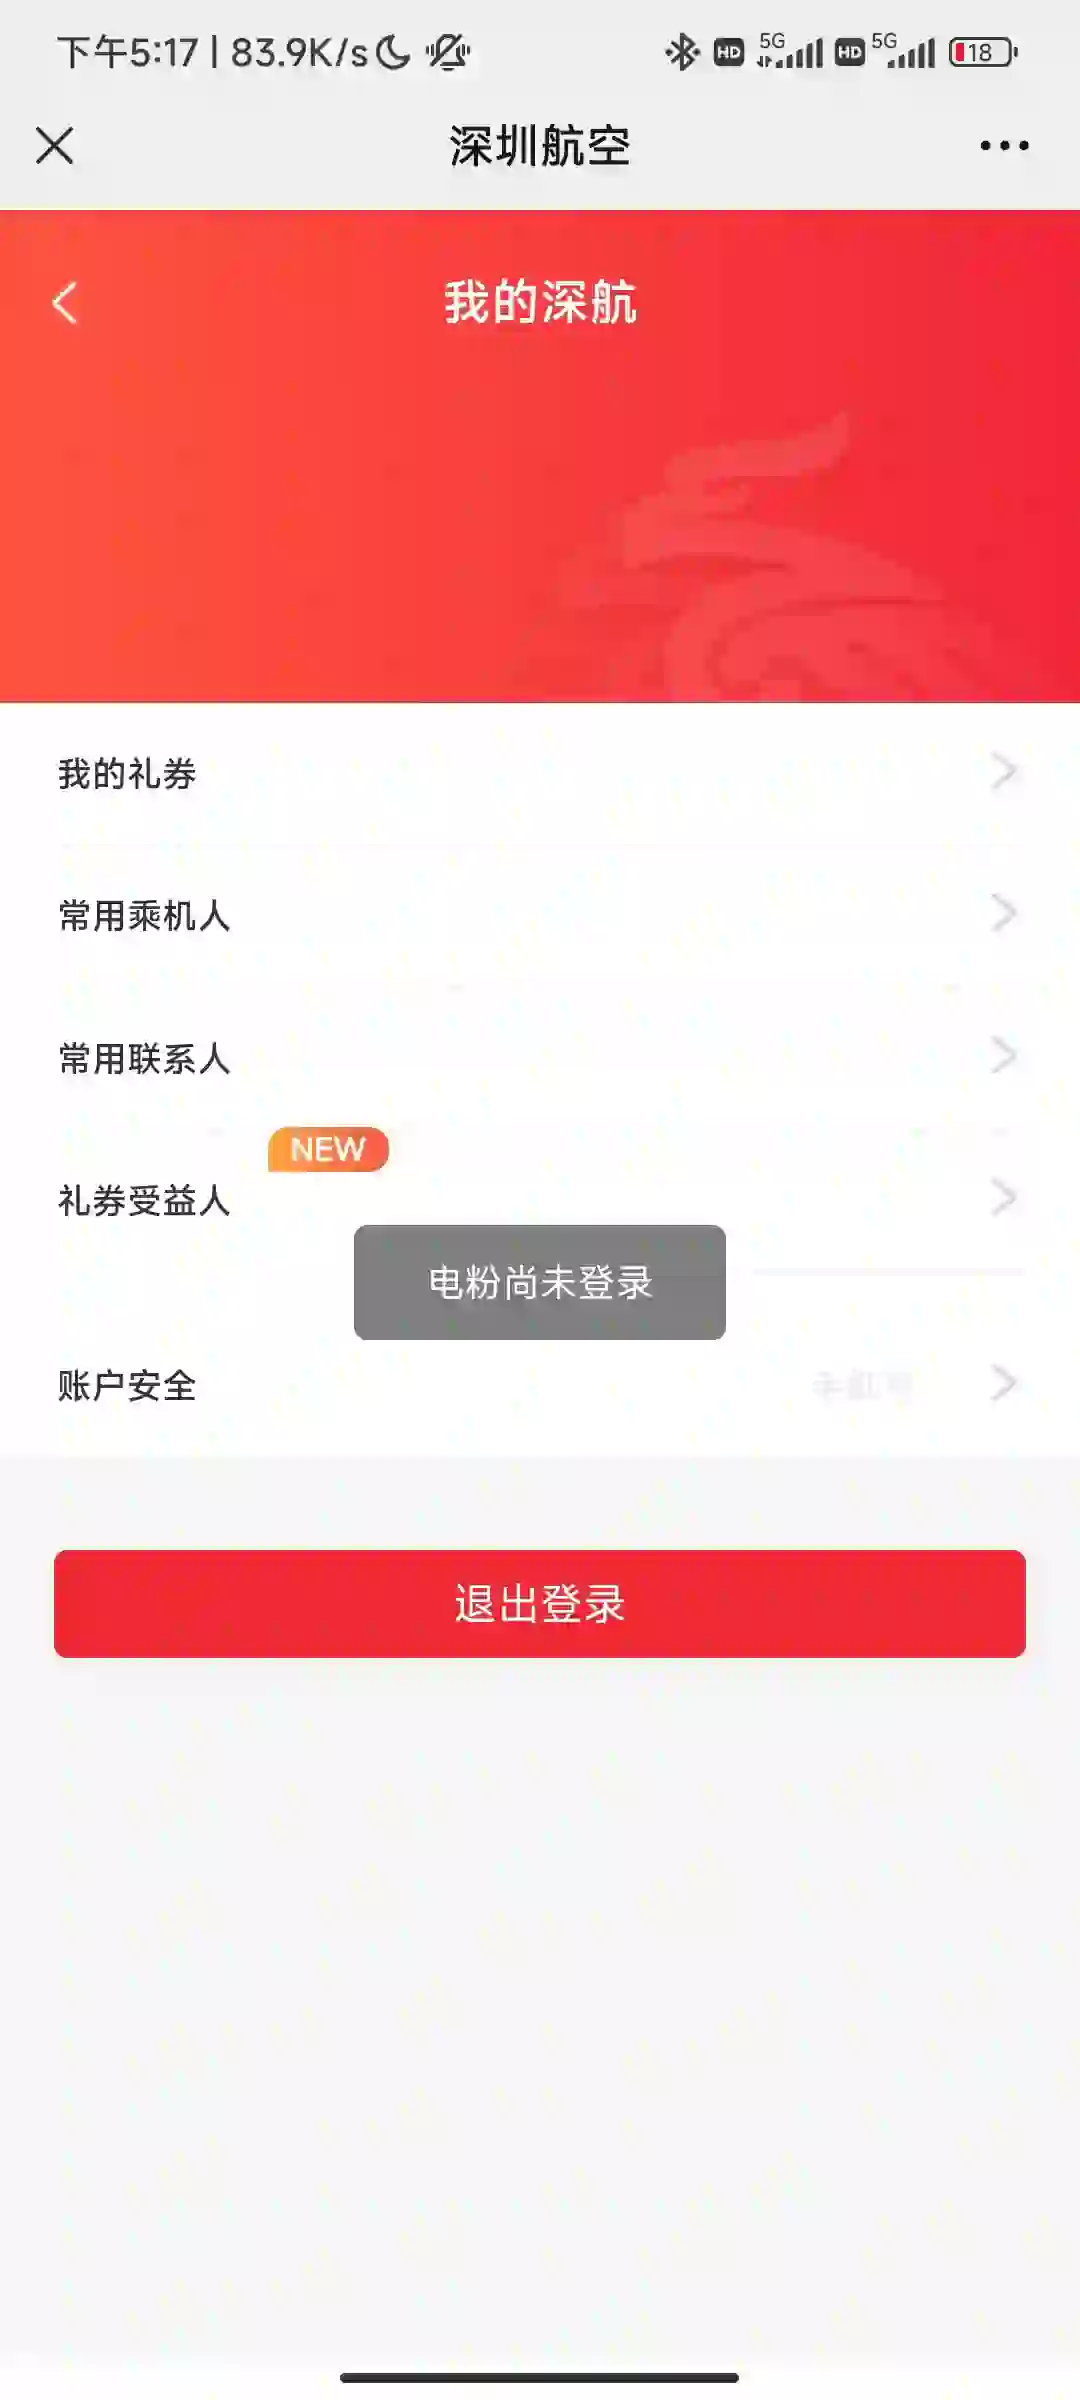 深圳航空的app工程师被开除了吗